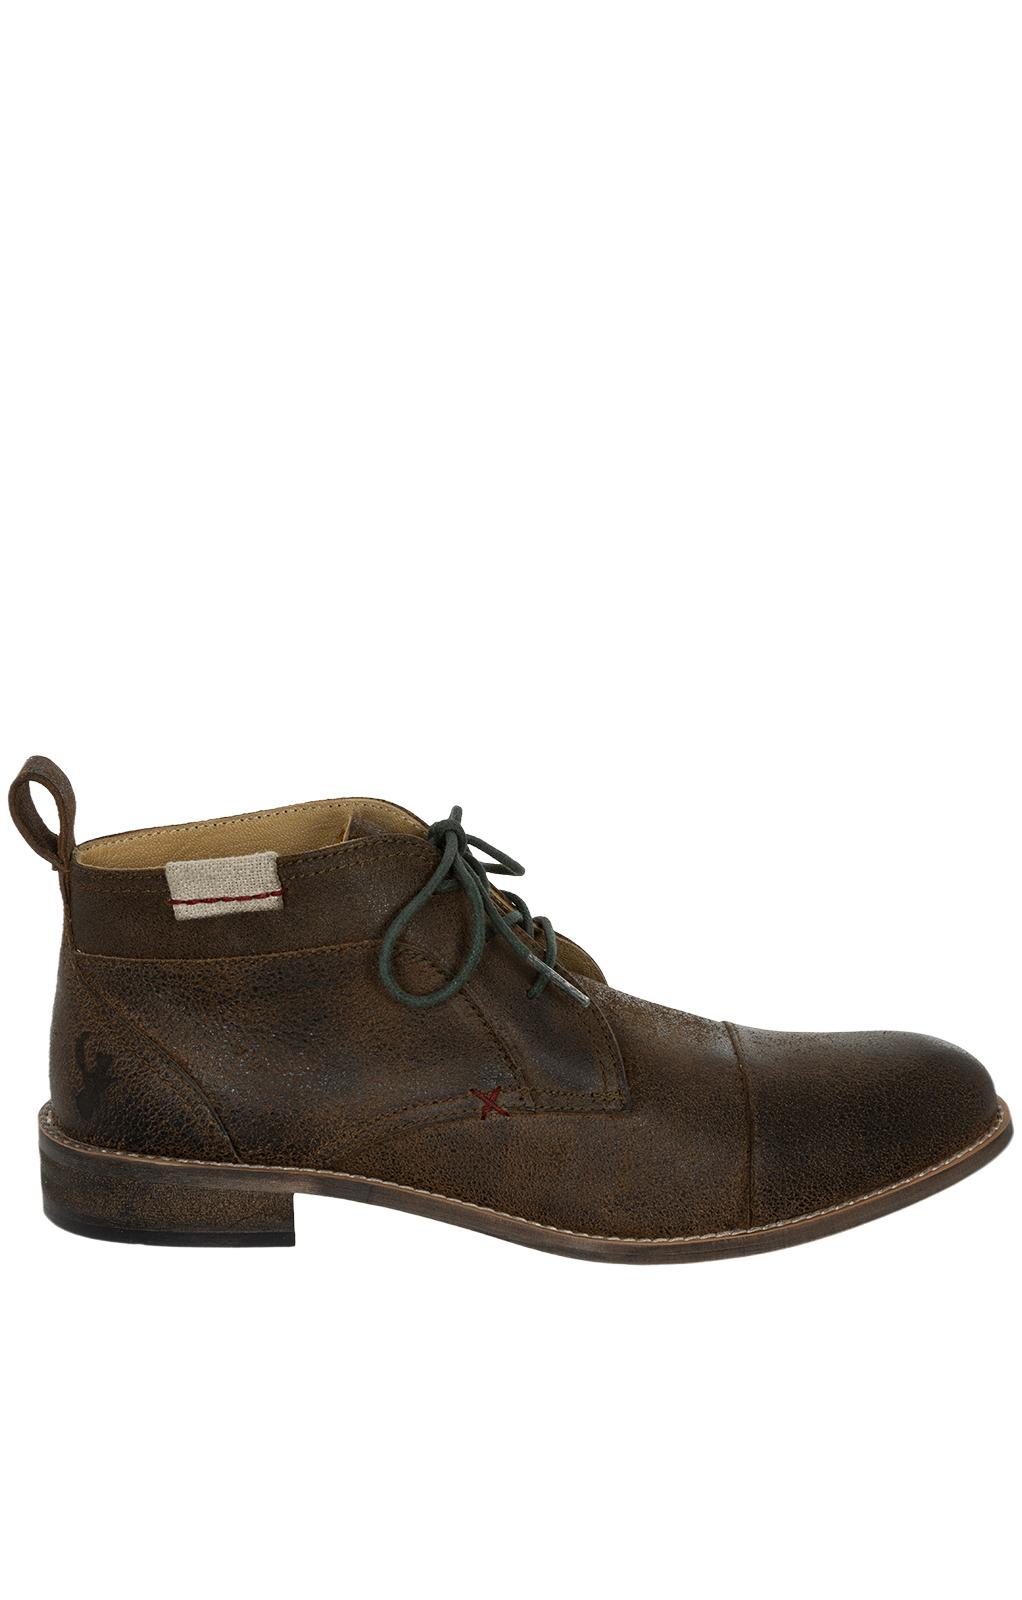 German traditional boots H531 JOCK brown von Spieth & Wensky